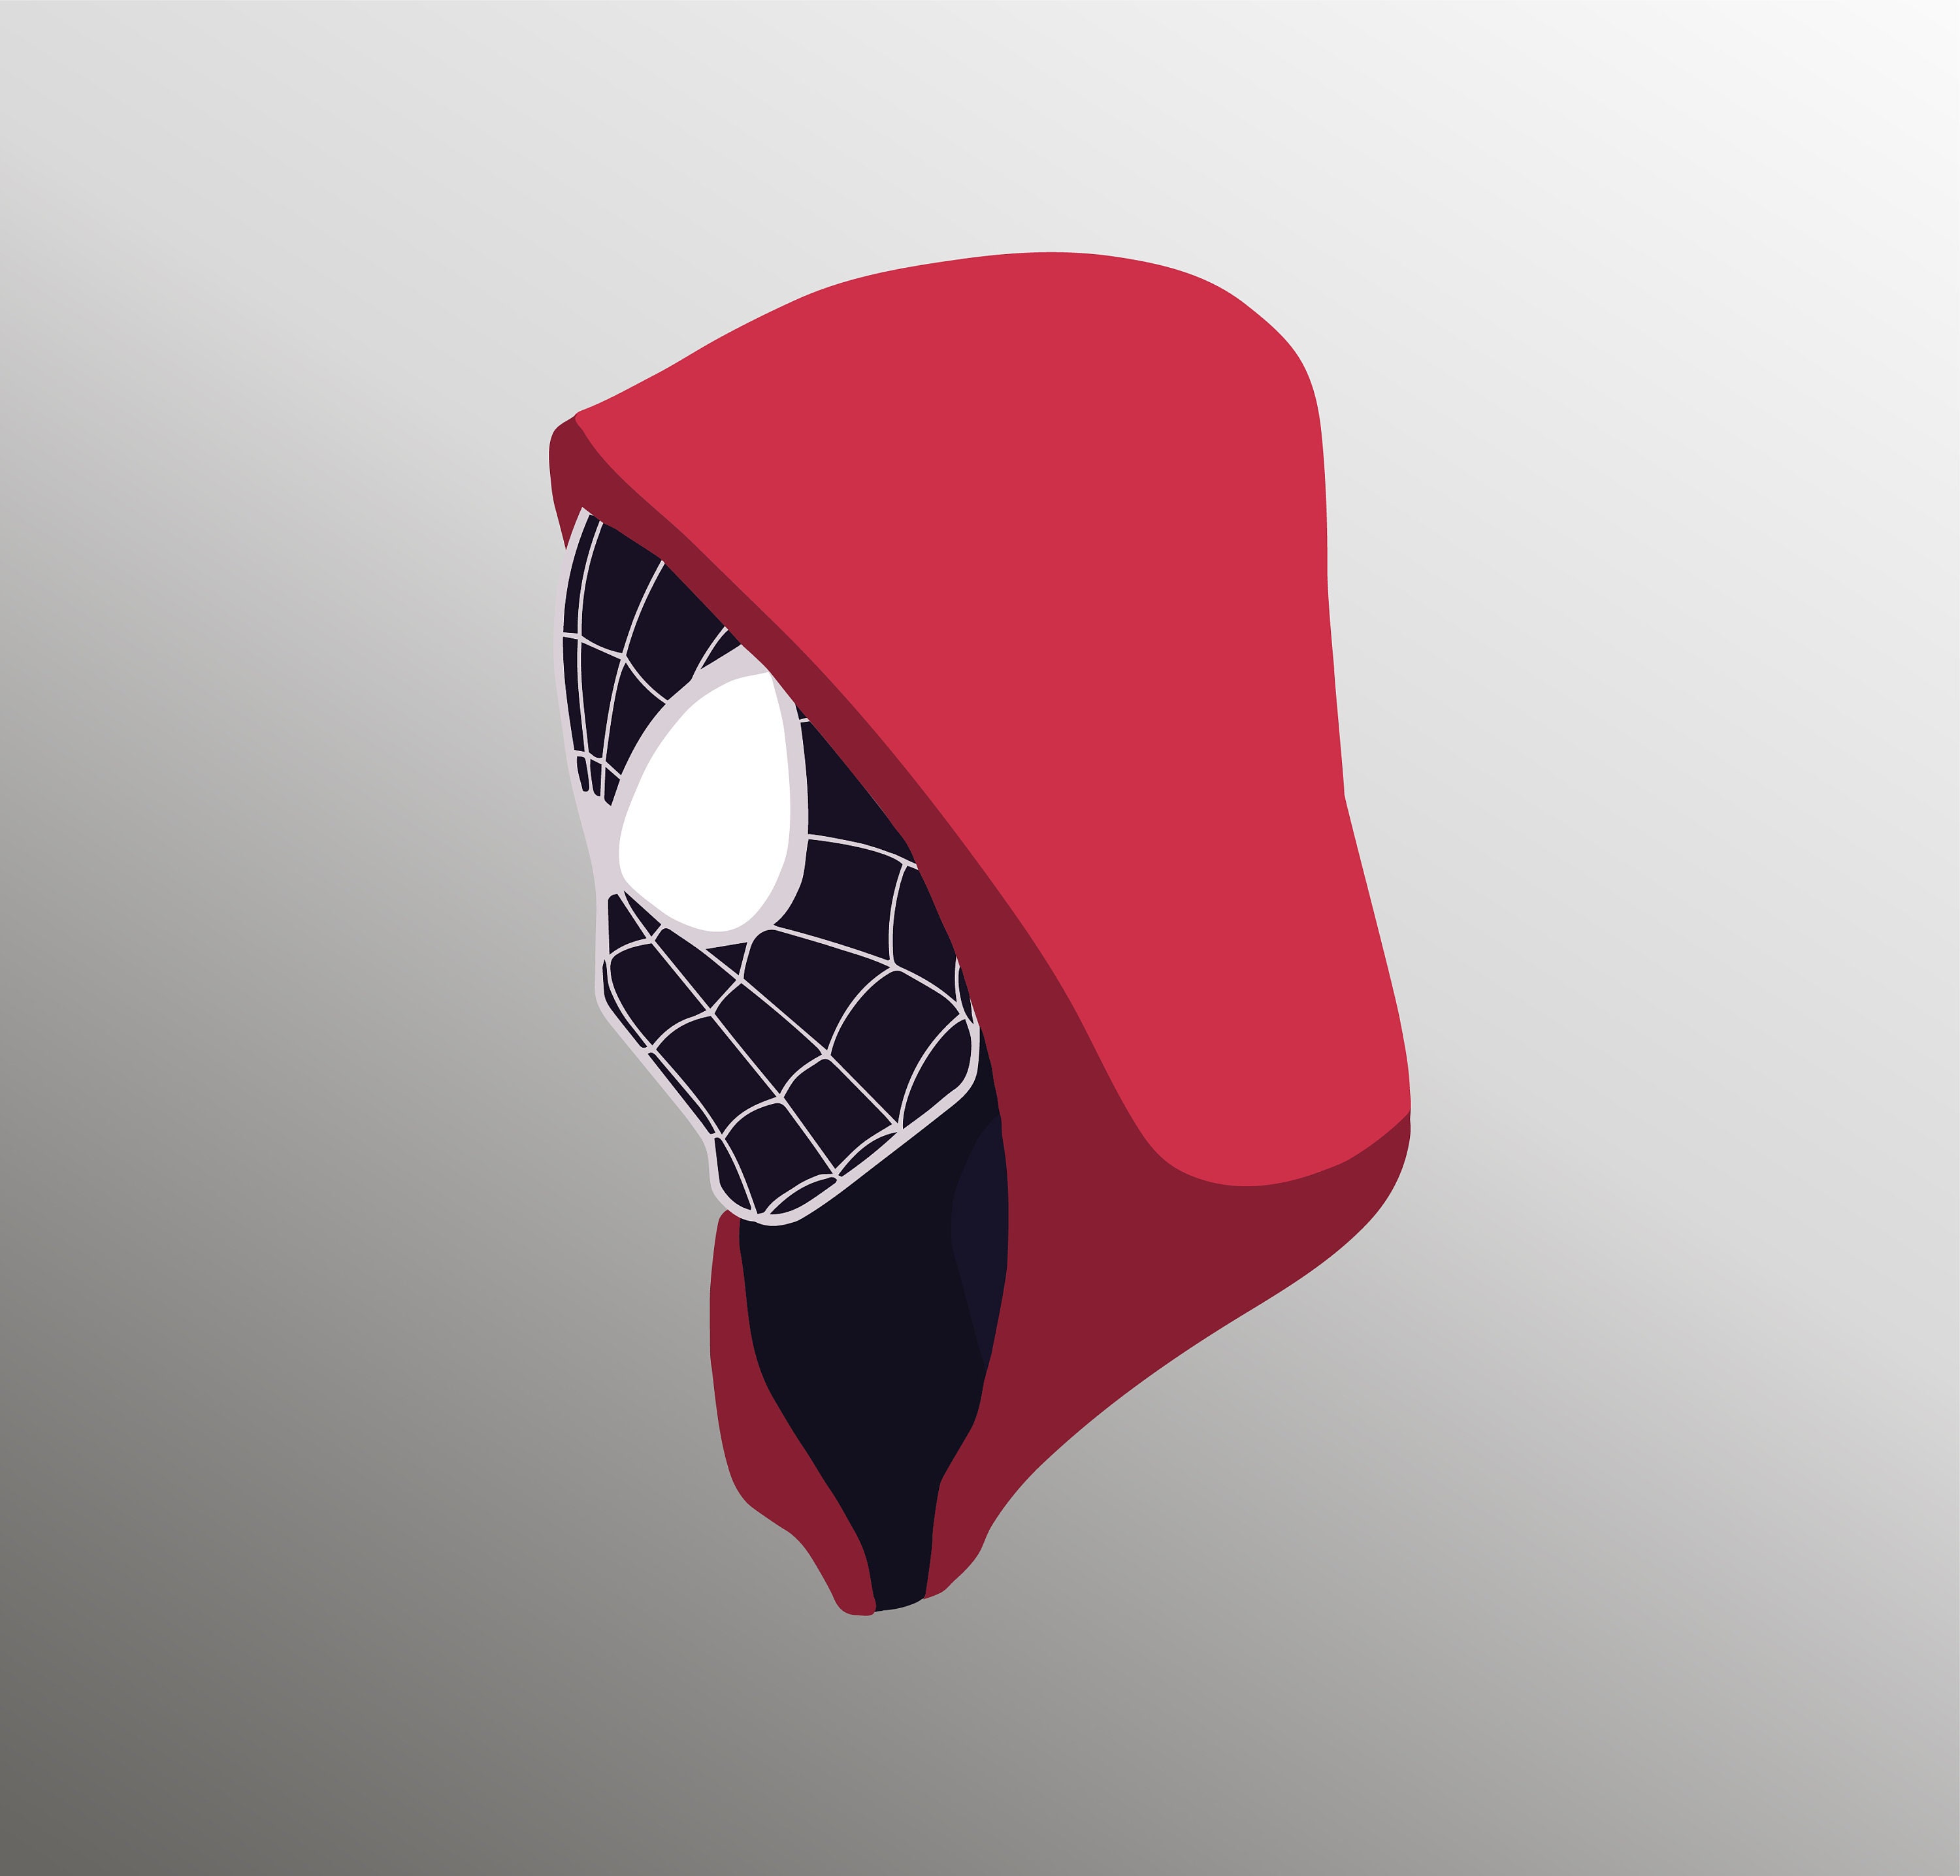 Miles Morales Costume Spider Man Sweatshirt à capuche pour enfants